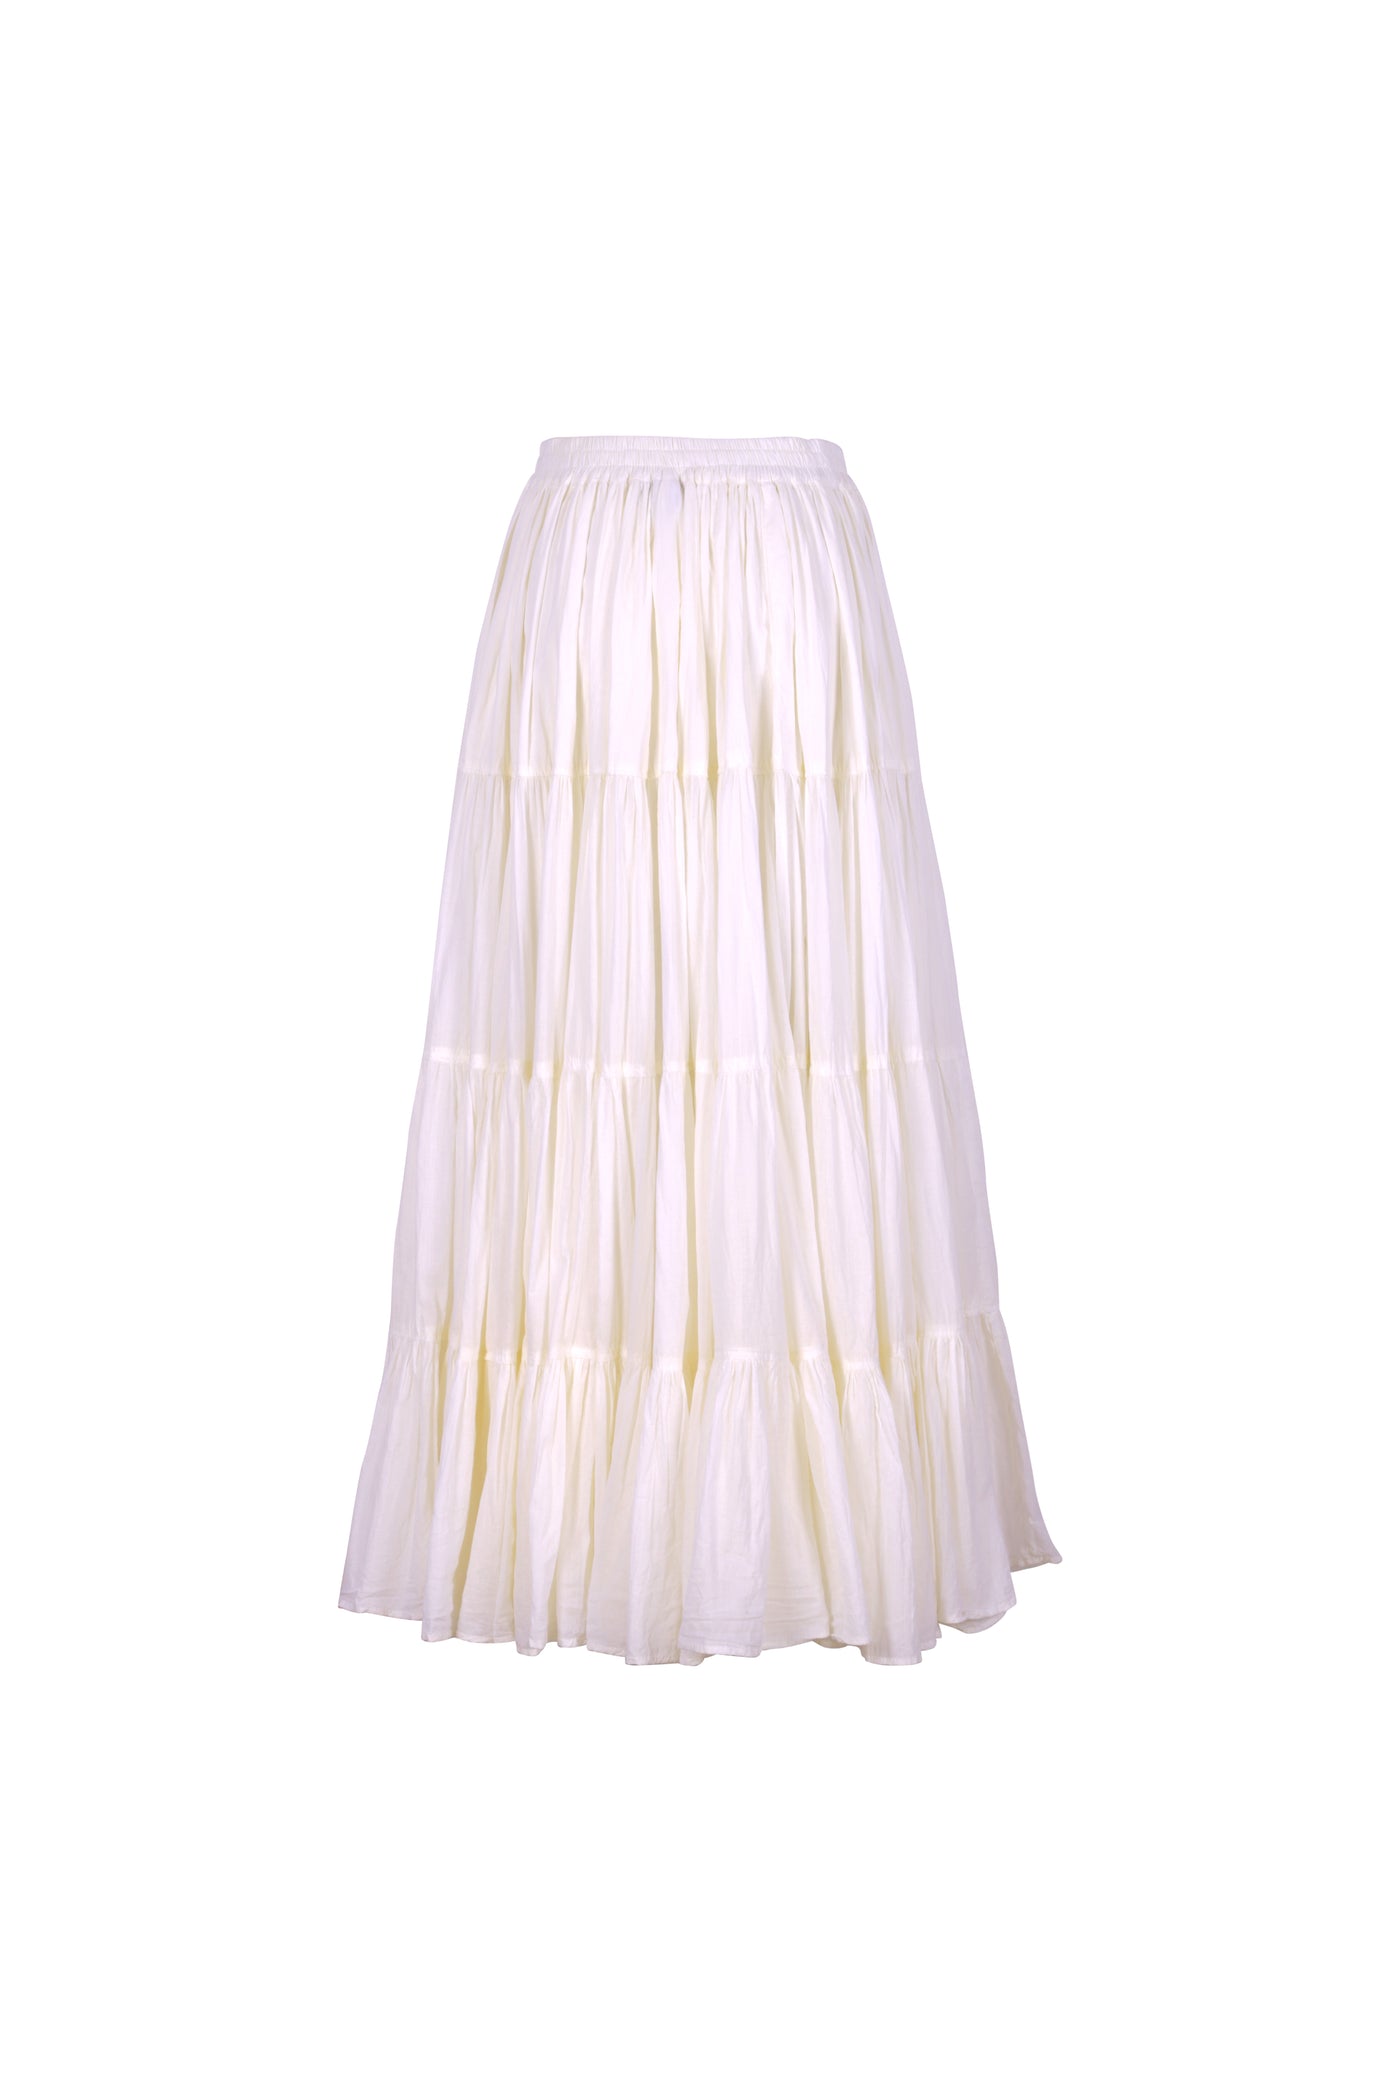 Roma Skirt (Cream)